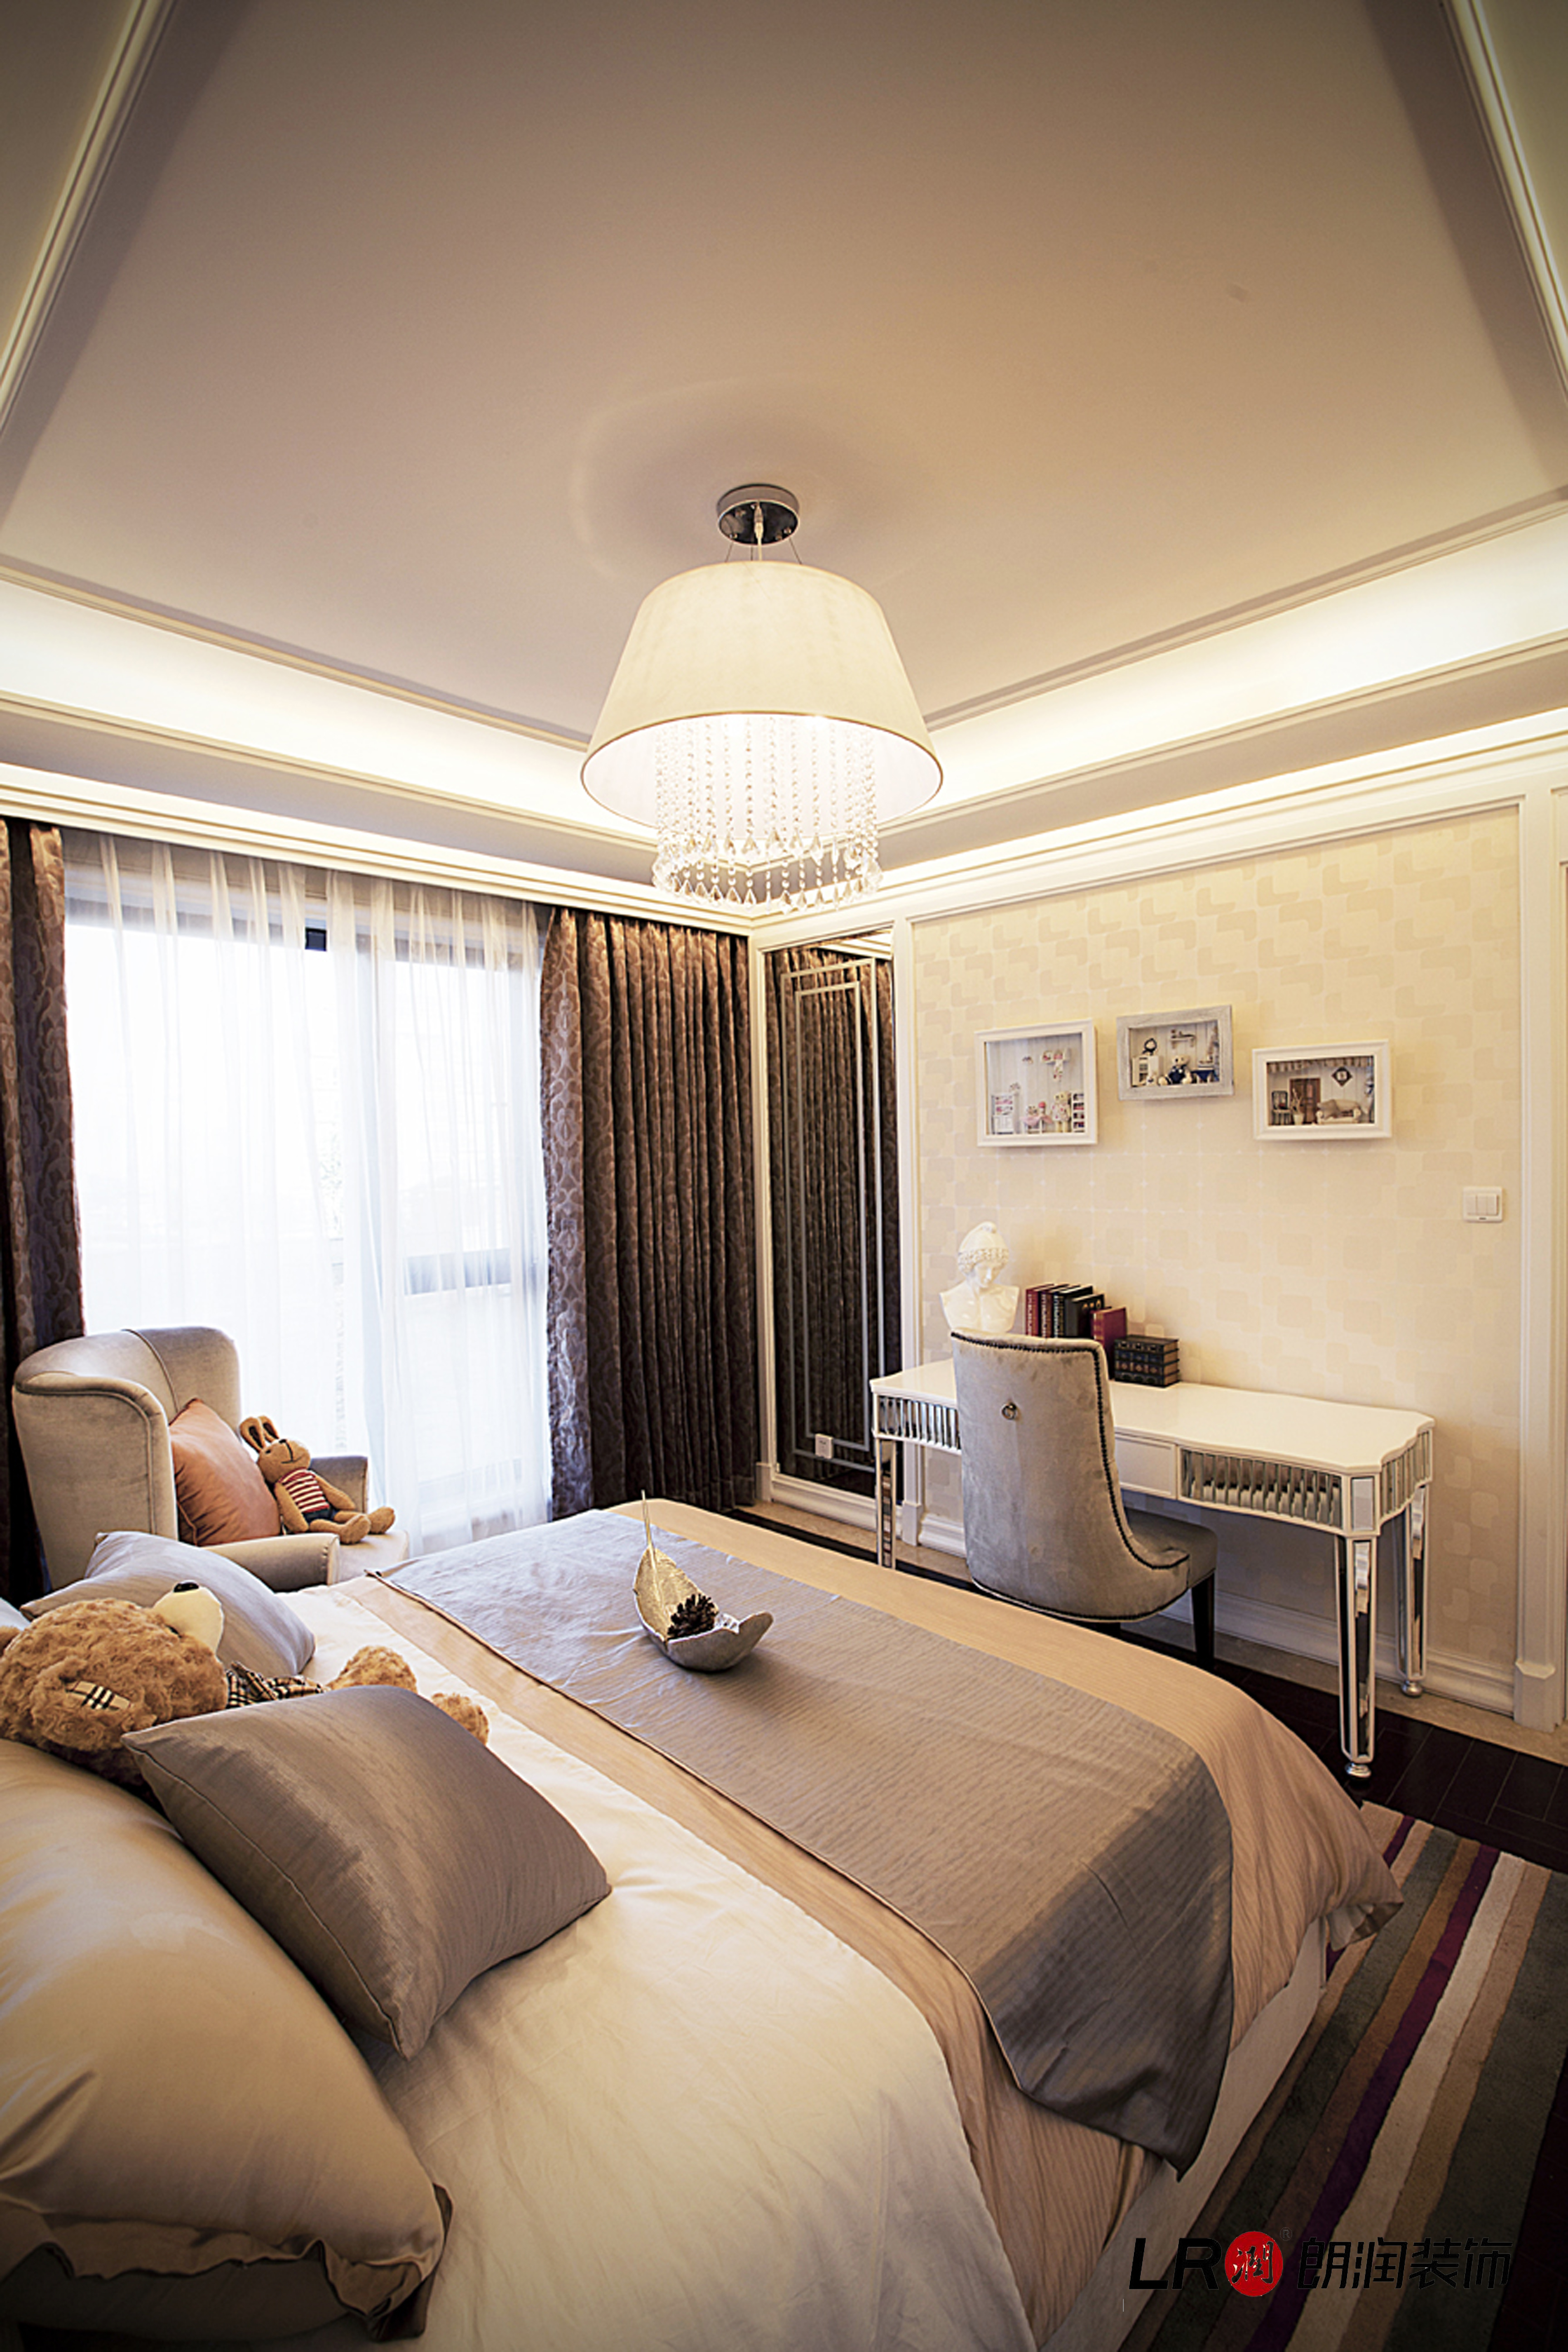 美式 简介 美观 大气 温情暖意 卧室图片来自朗润装饰工程有限公司在世茂玉锦湾的分享